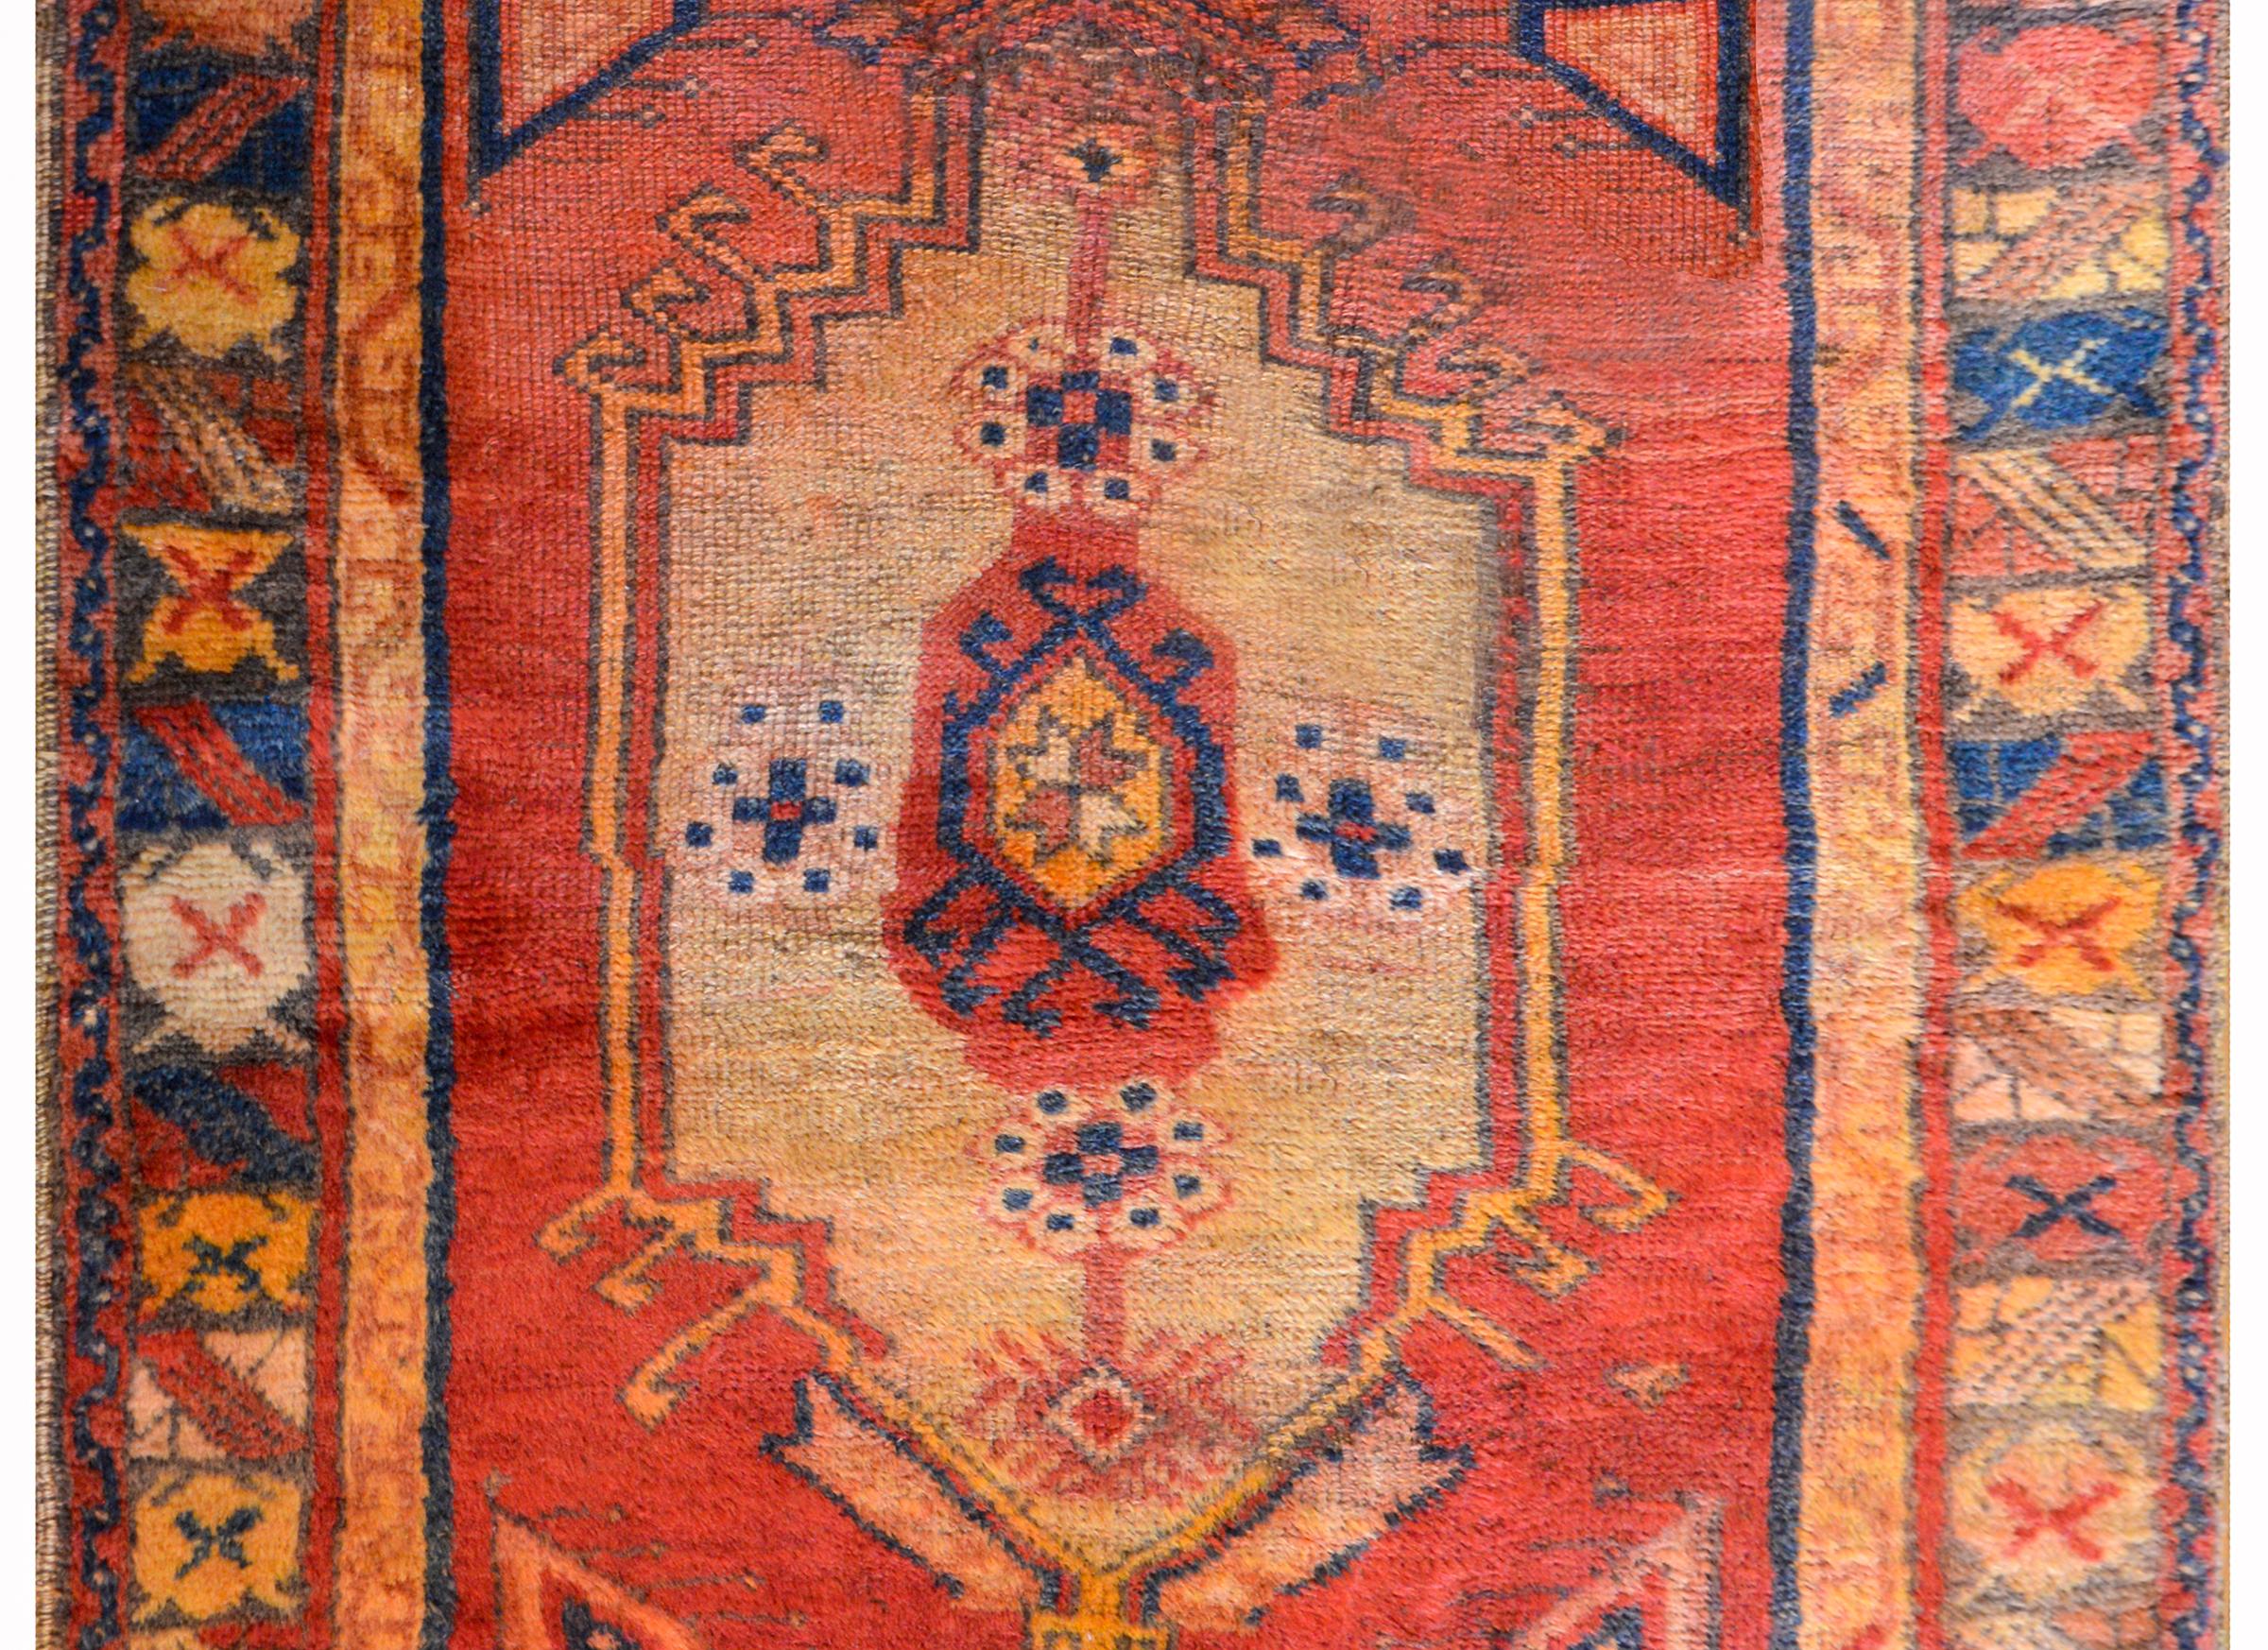 Magnifique tapis turc d'Anatolie du début du XXe siècle avec un grand médaillon central tissé en indigo, crème, orange et cramoisi, sur un riche fond cramoisi entouré de multiples bandes stylisées à motifs floraux.